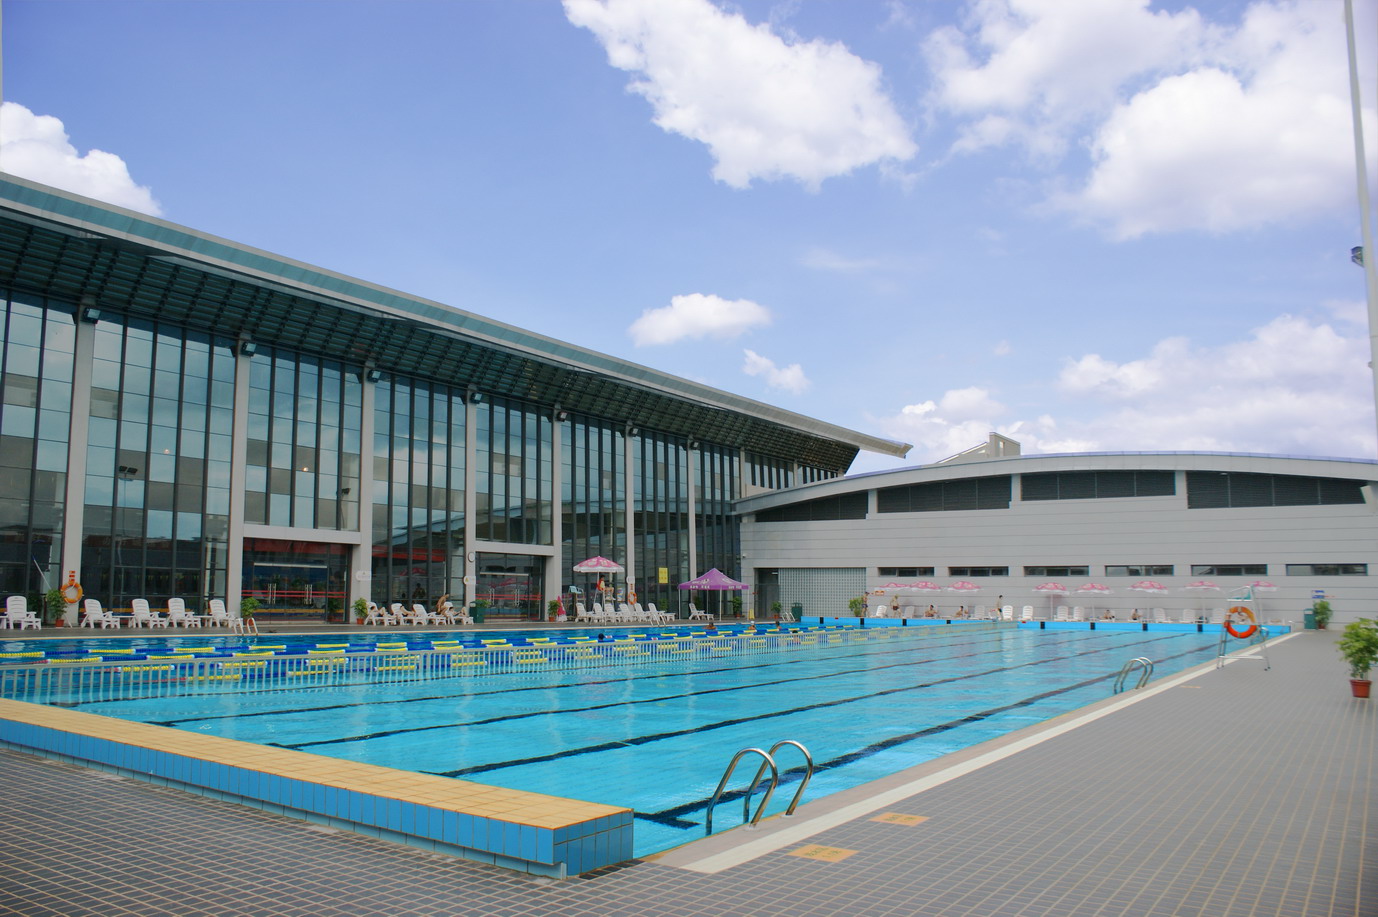 成都锦江区游泳运动项目管理中心游泳产品经销处预订